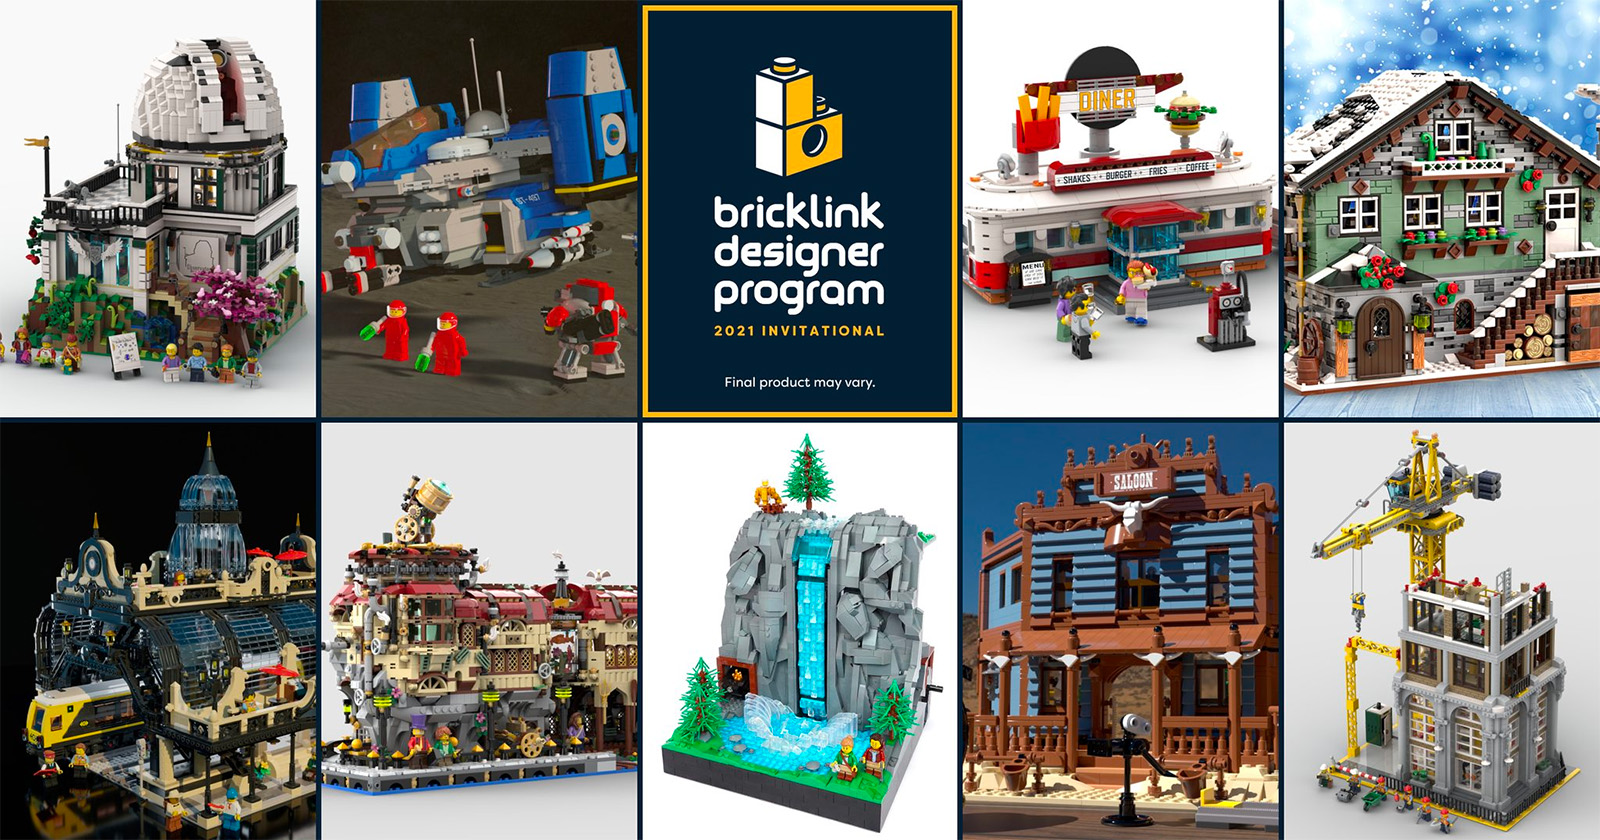 תוכנית Bricklink Designer: הזמנות מוקדמות לגל השלישי של מימון המונים פתוחות